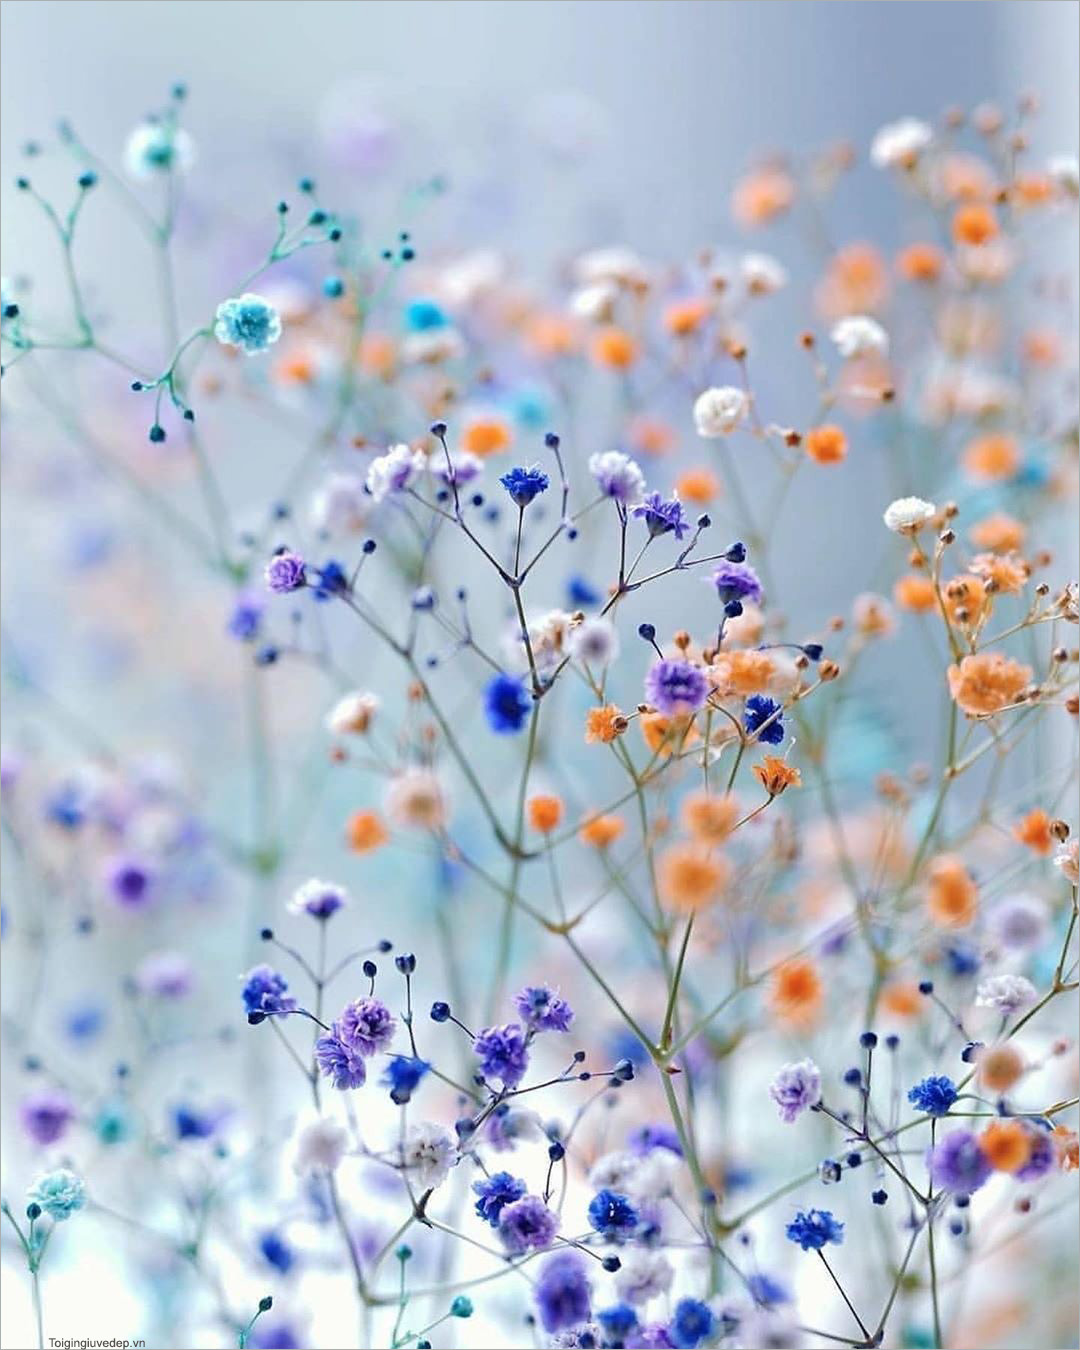 Avatar chill hoa: Tìm hiểu thế giới của Chill hoa với avatar hoa độc đáo. Thư giãn, tìm lại bình yên của bạn và tạo ra ấn tượng với những hình ảnh độc đáo này. Hãy cùng nhau khám phá thế giới của Chill hoa và tìm kiếm sự thanh thản trong tâm hồn của chính bạn.